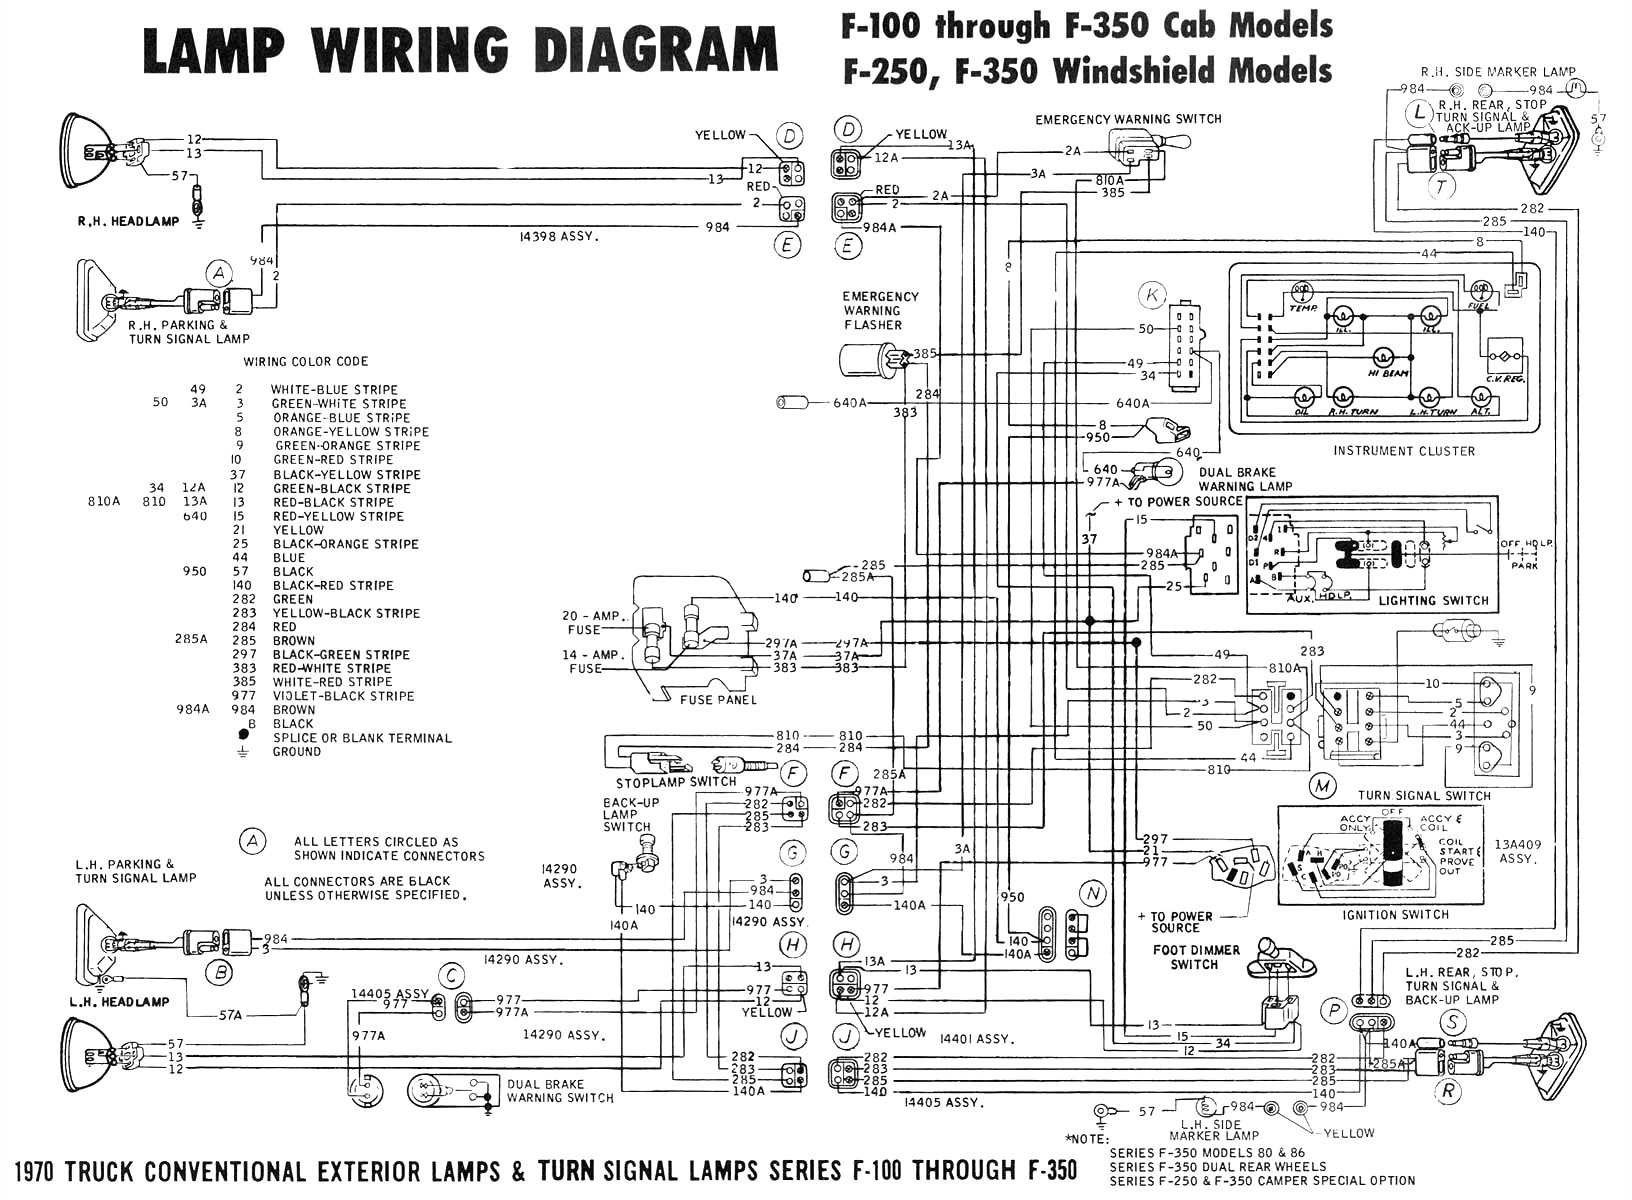 2011 ford f250 wiring diagram wiring diagram mega 2011 ford f250 headlight wiring diagram 2011 ford